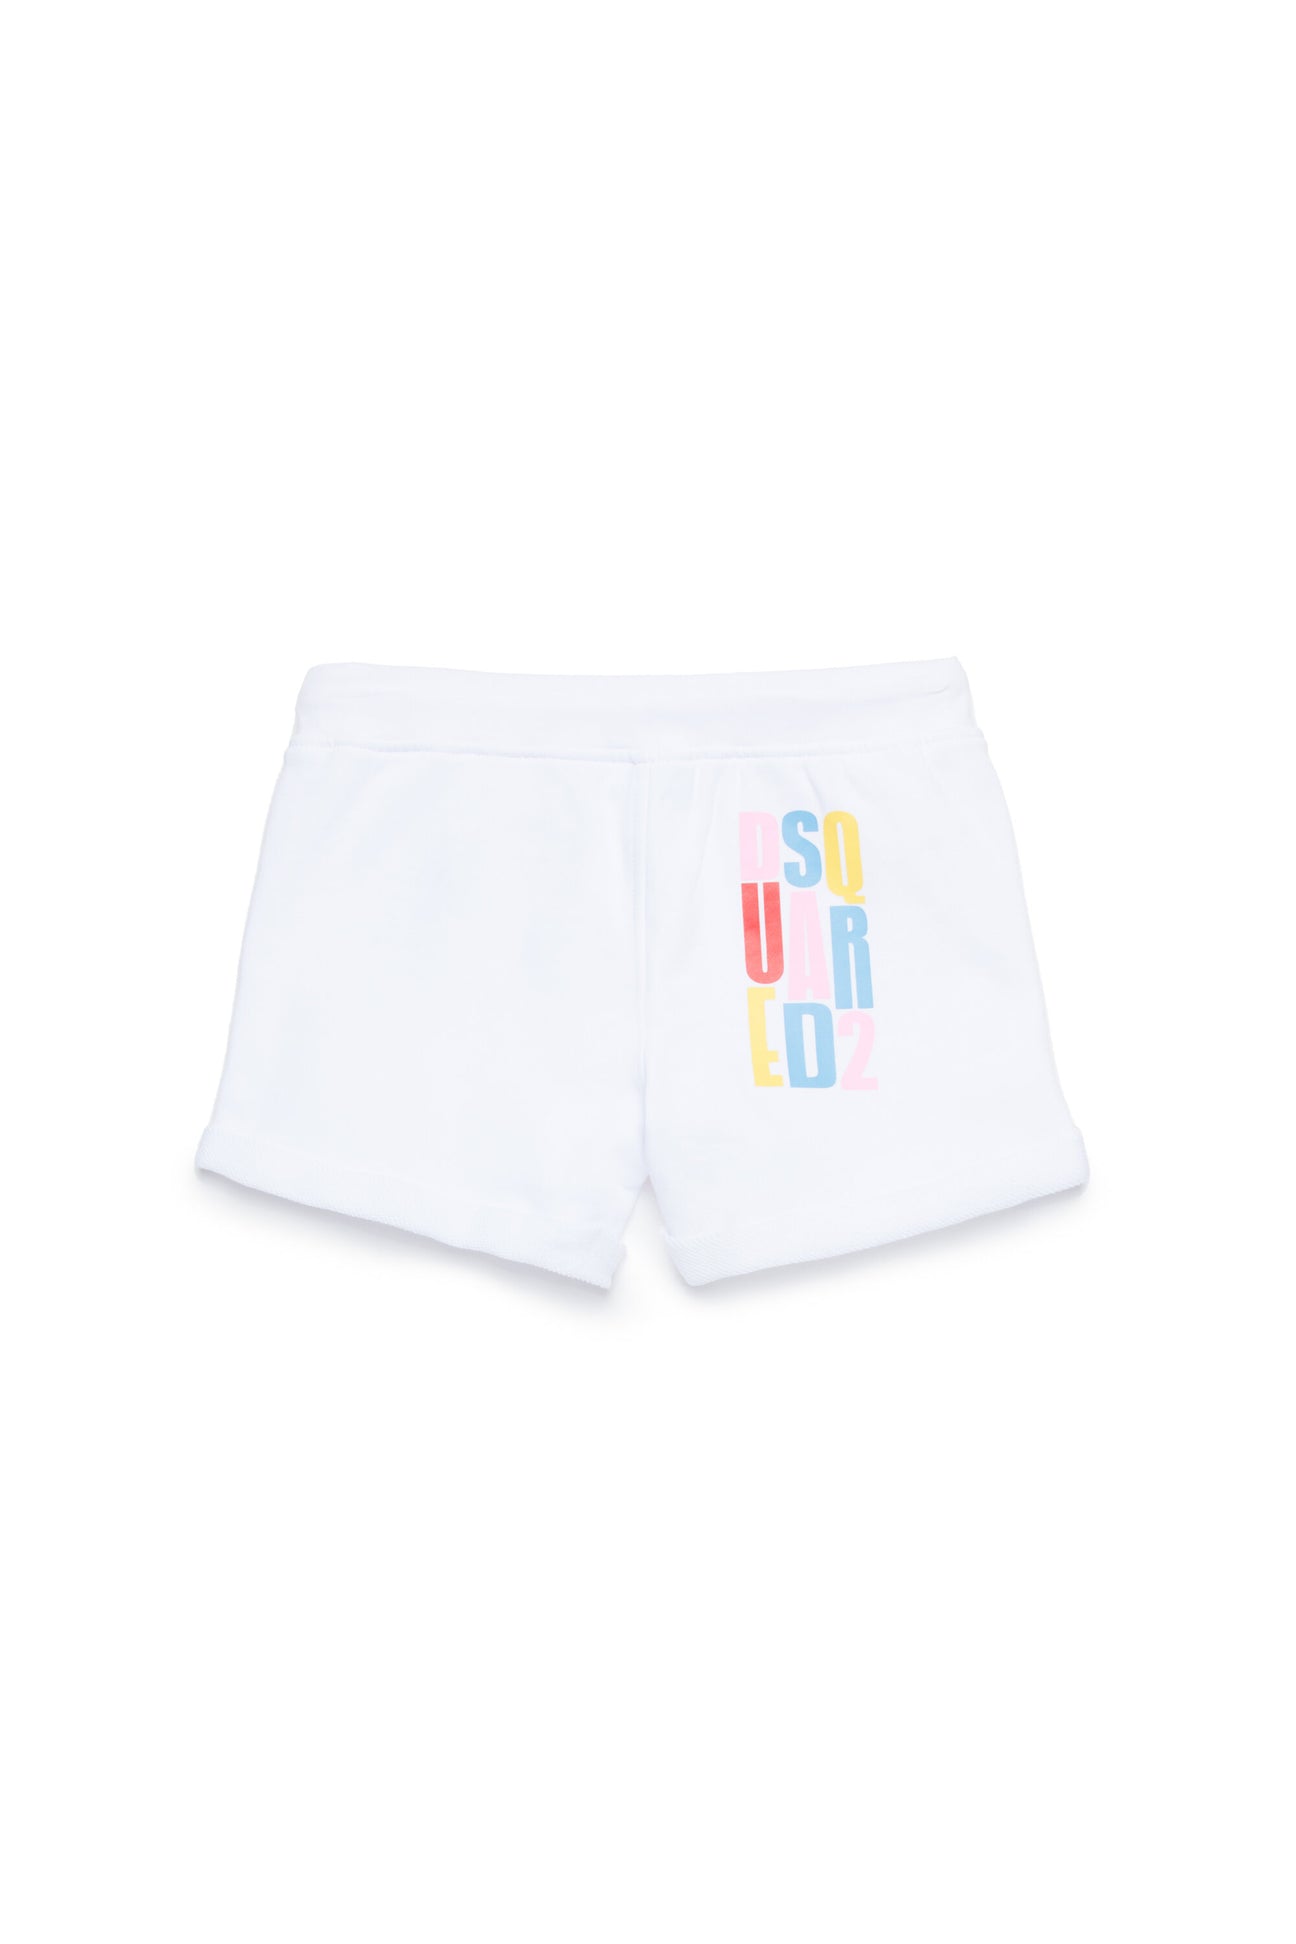 Pantalones cortos en chándal multicolor con marca Pantalones cortos en chándal multicolor con marca